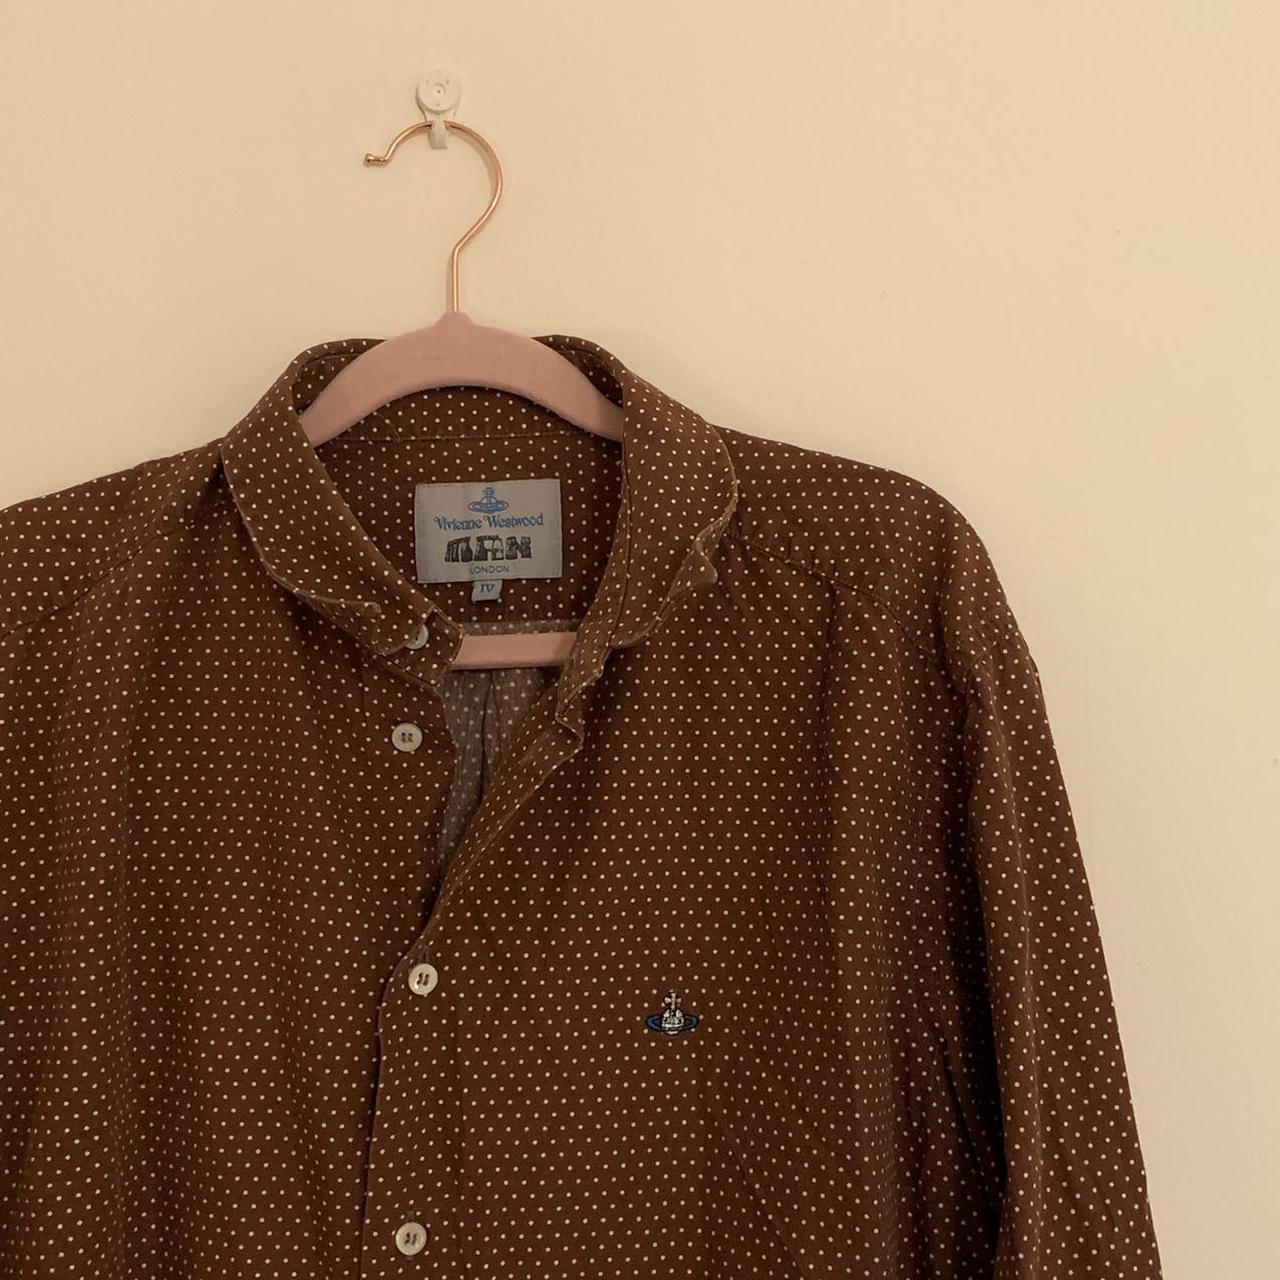 Product Image 2 - vintage vivienne westwood shirt, brown